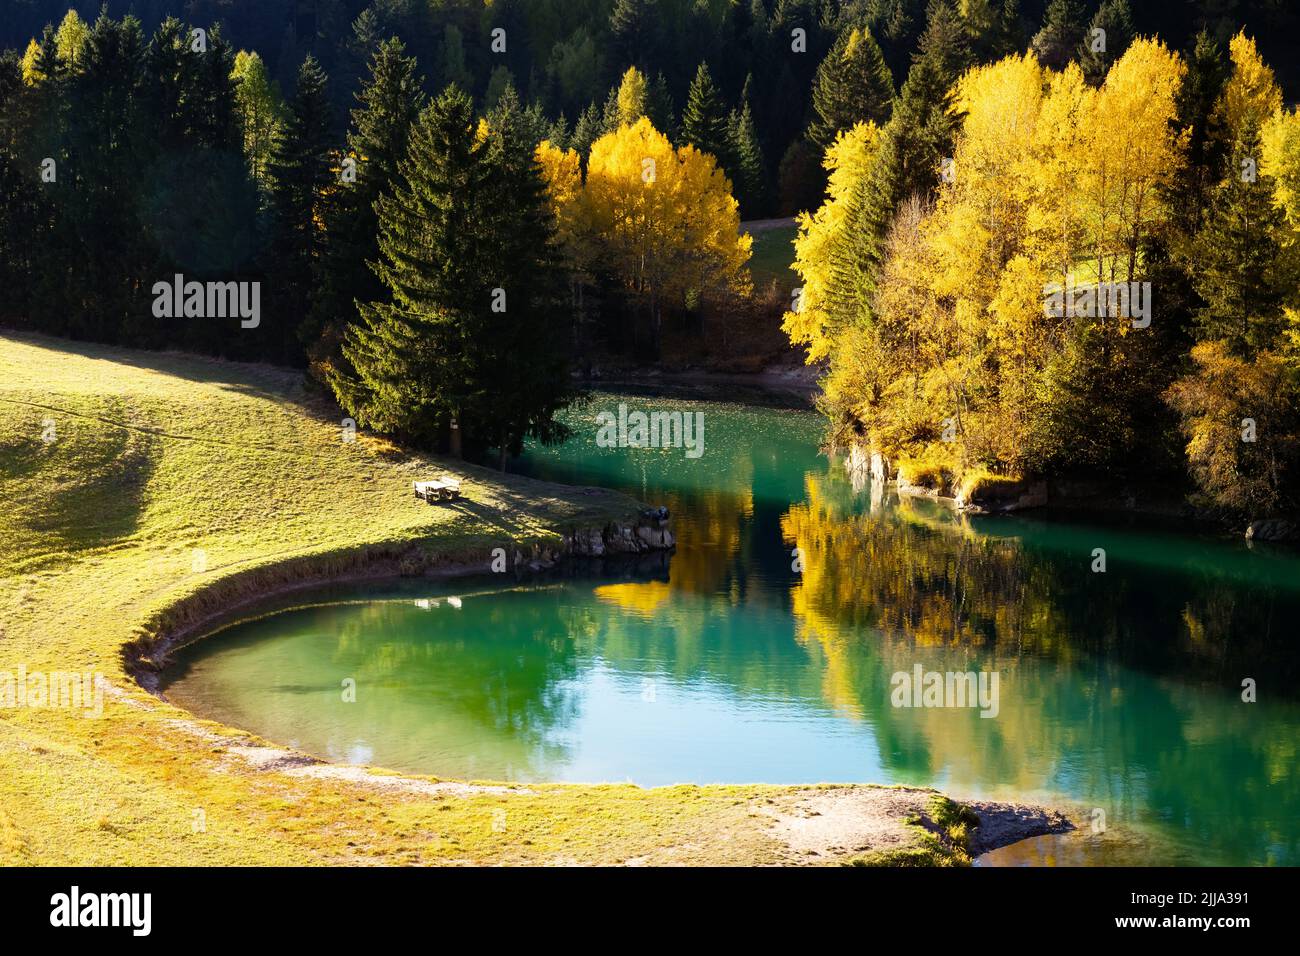 Sunny autumn view of Soraga lake in Soraga di Fassa village, Province of Trento, Italy, Dolomite Alps. Landscape photography Stock Photo